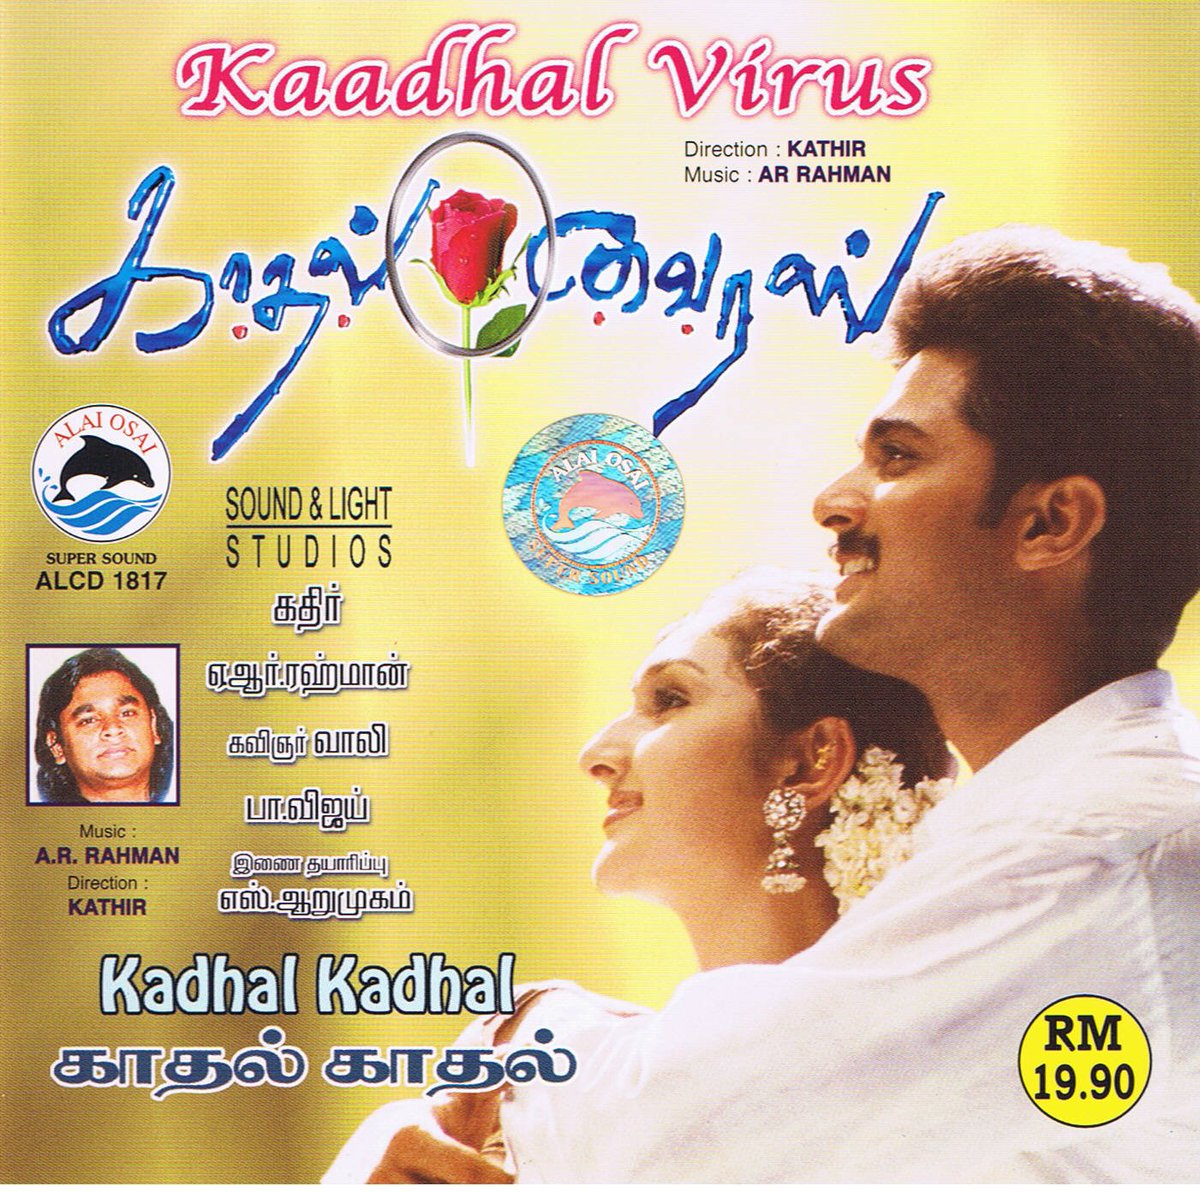 This movie album deserves much more love. such an underrated album! @arrahman #kadhalvirus